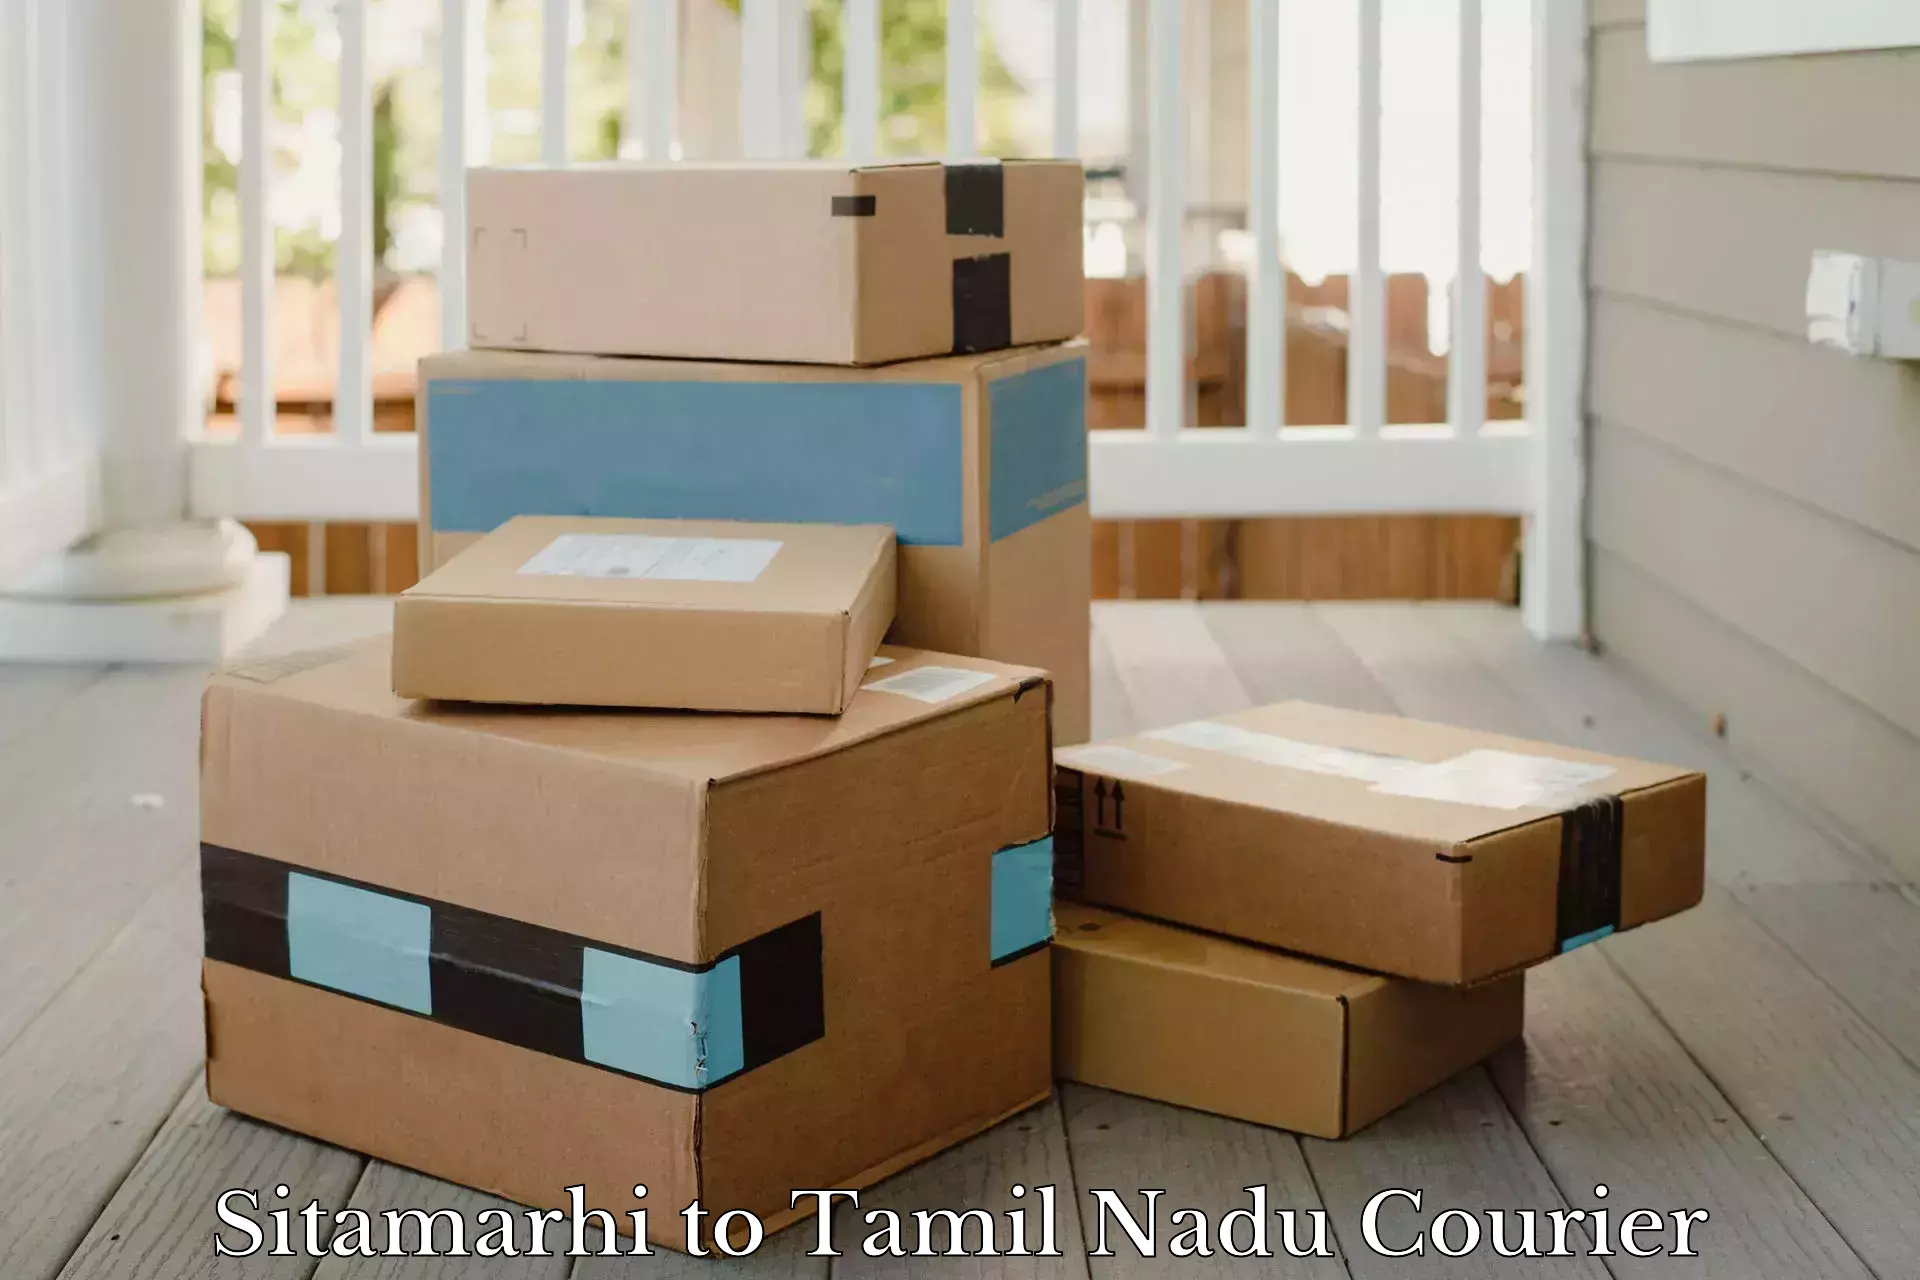 Efficient cargo services Sitamarhi to Tamil Nadu